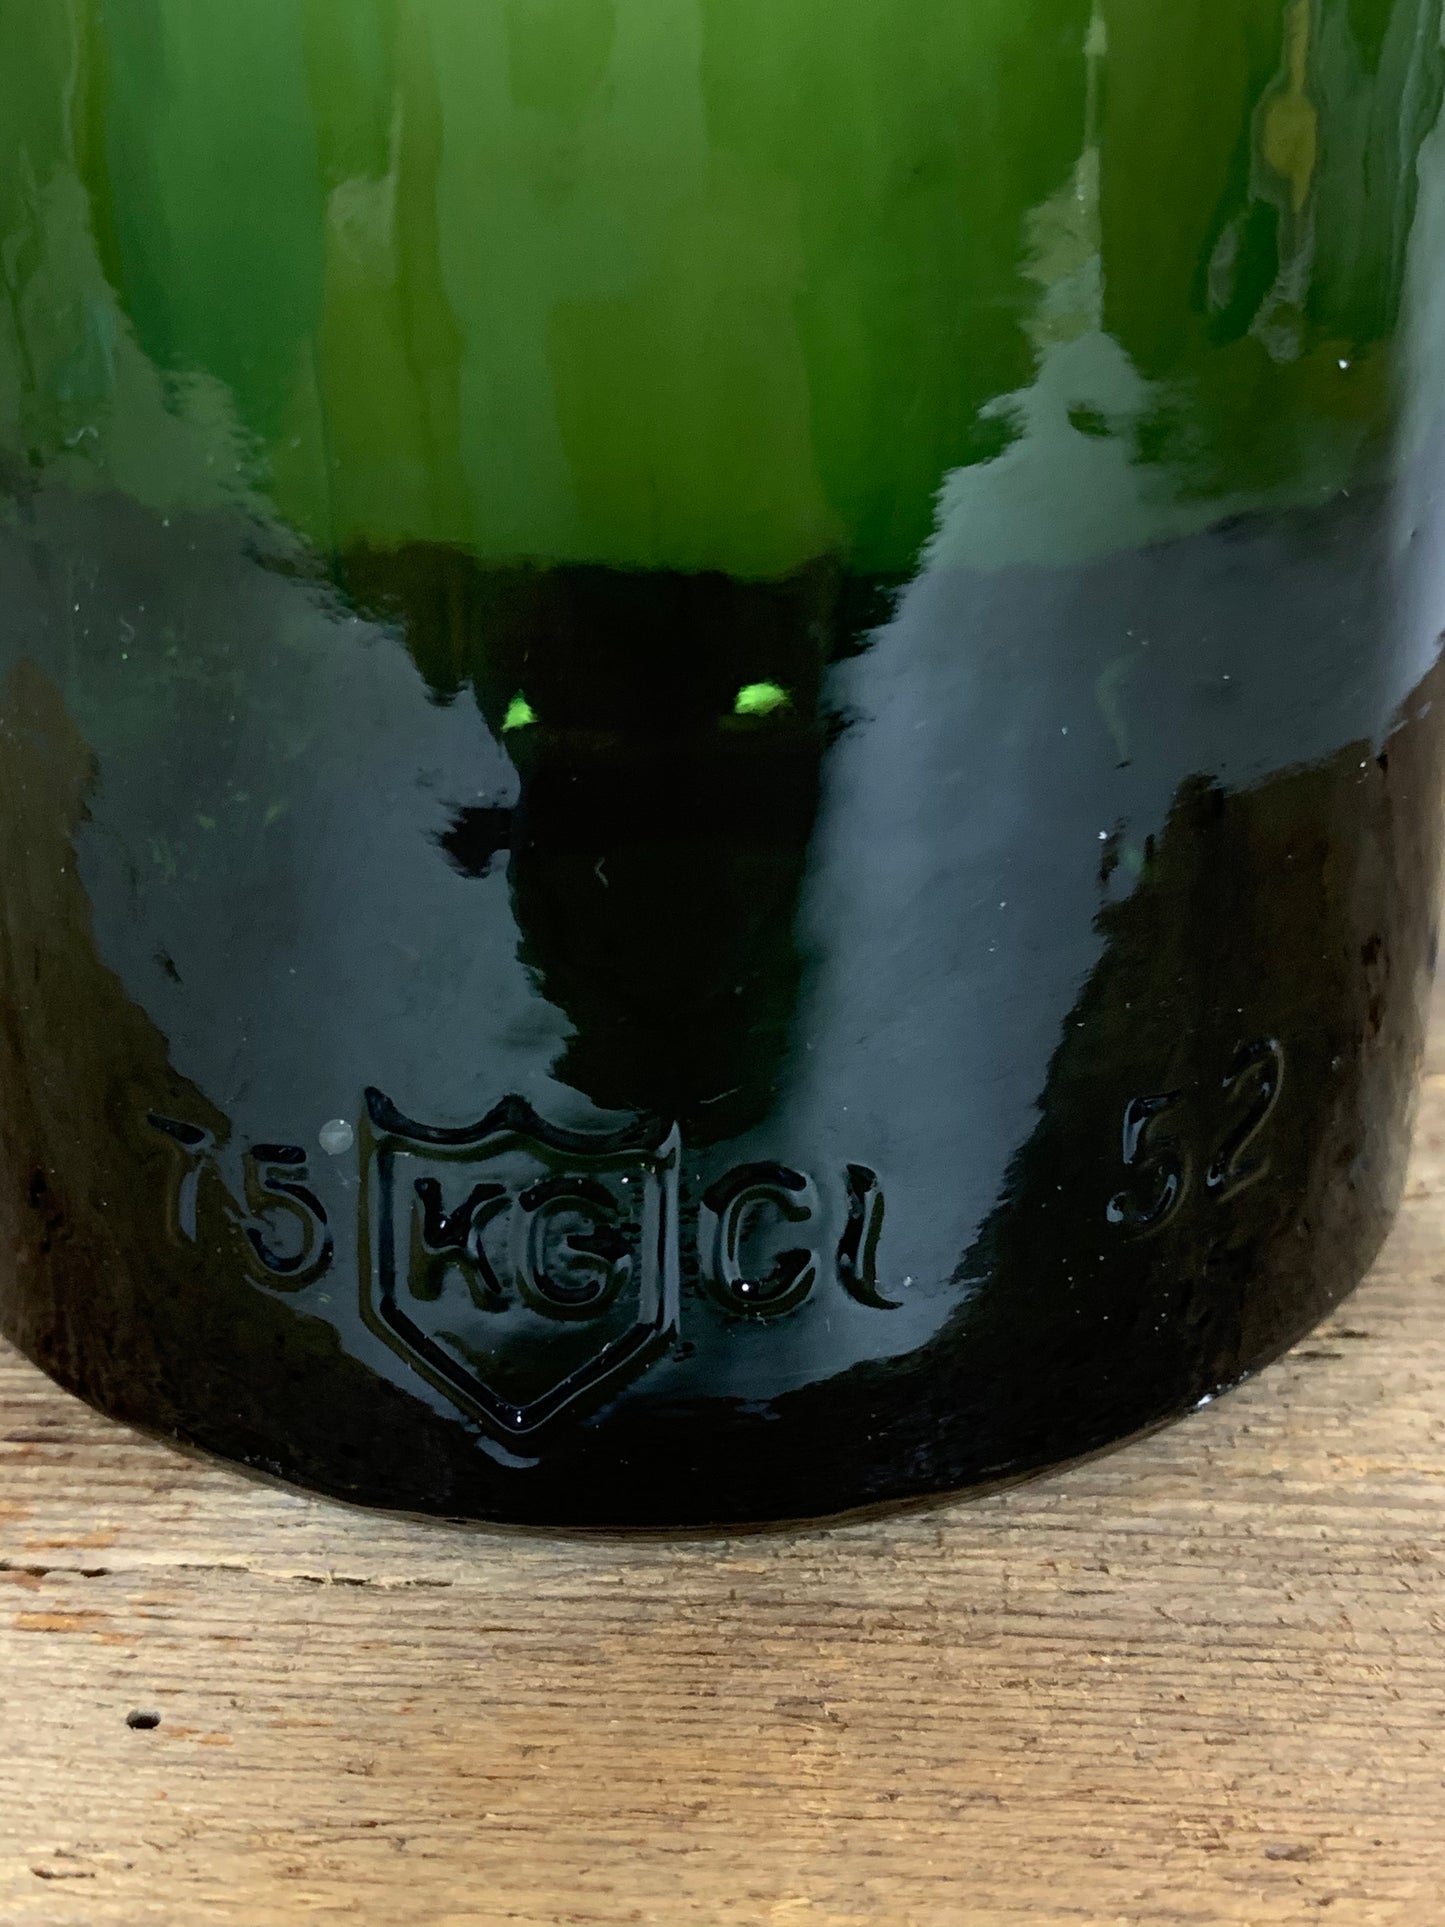 Dekorative alte Flasche - Grün